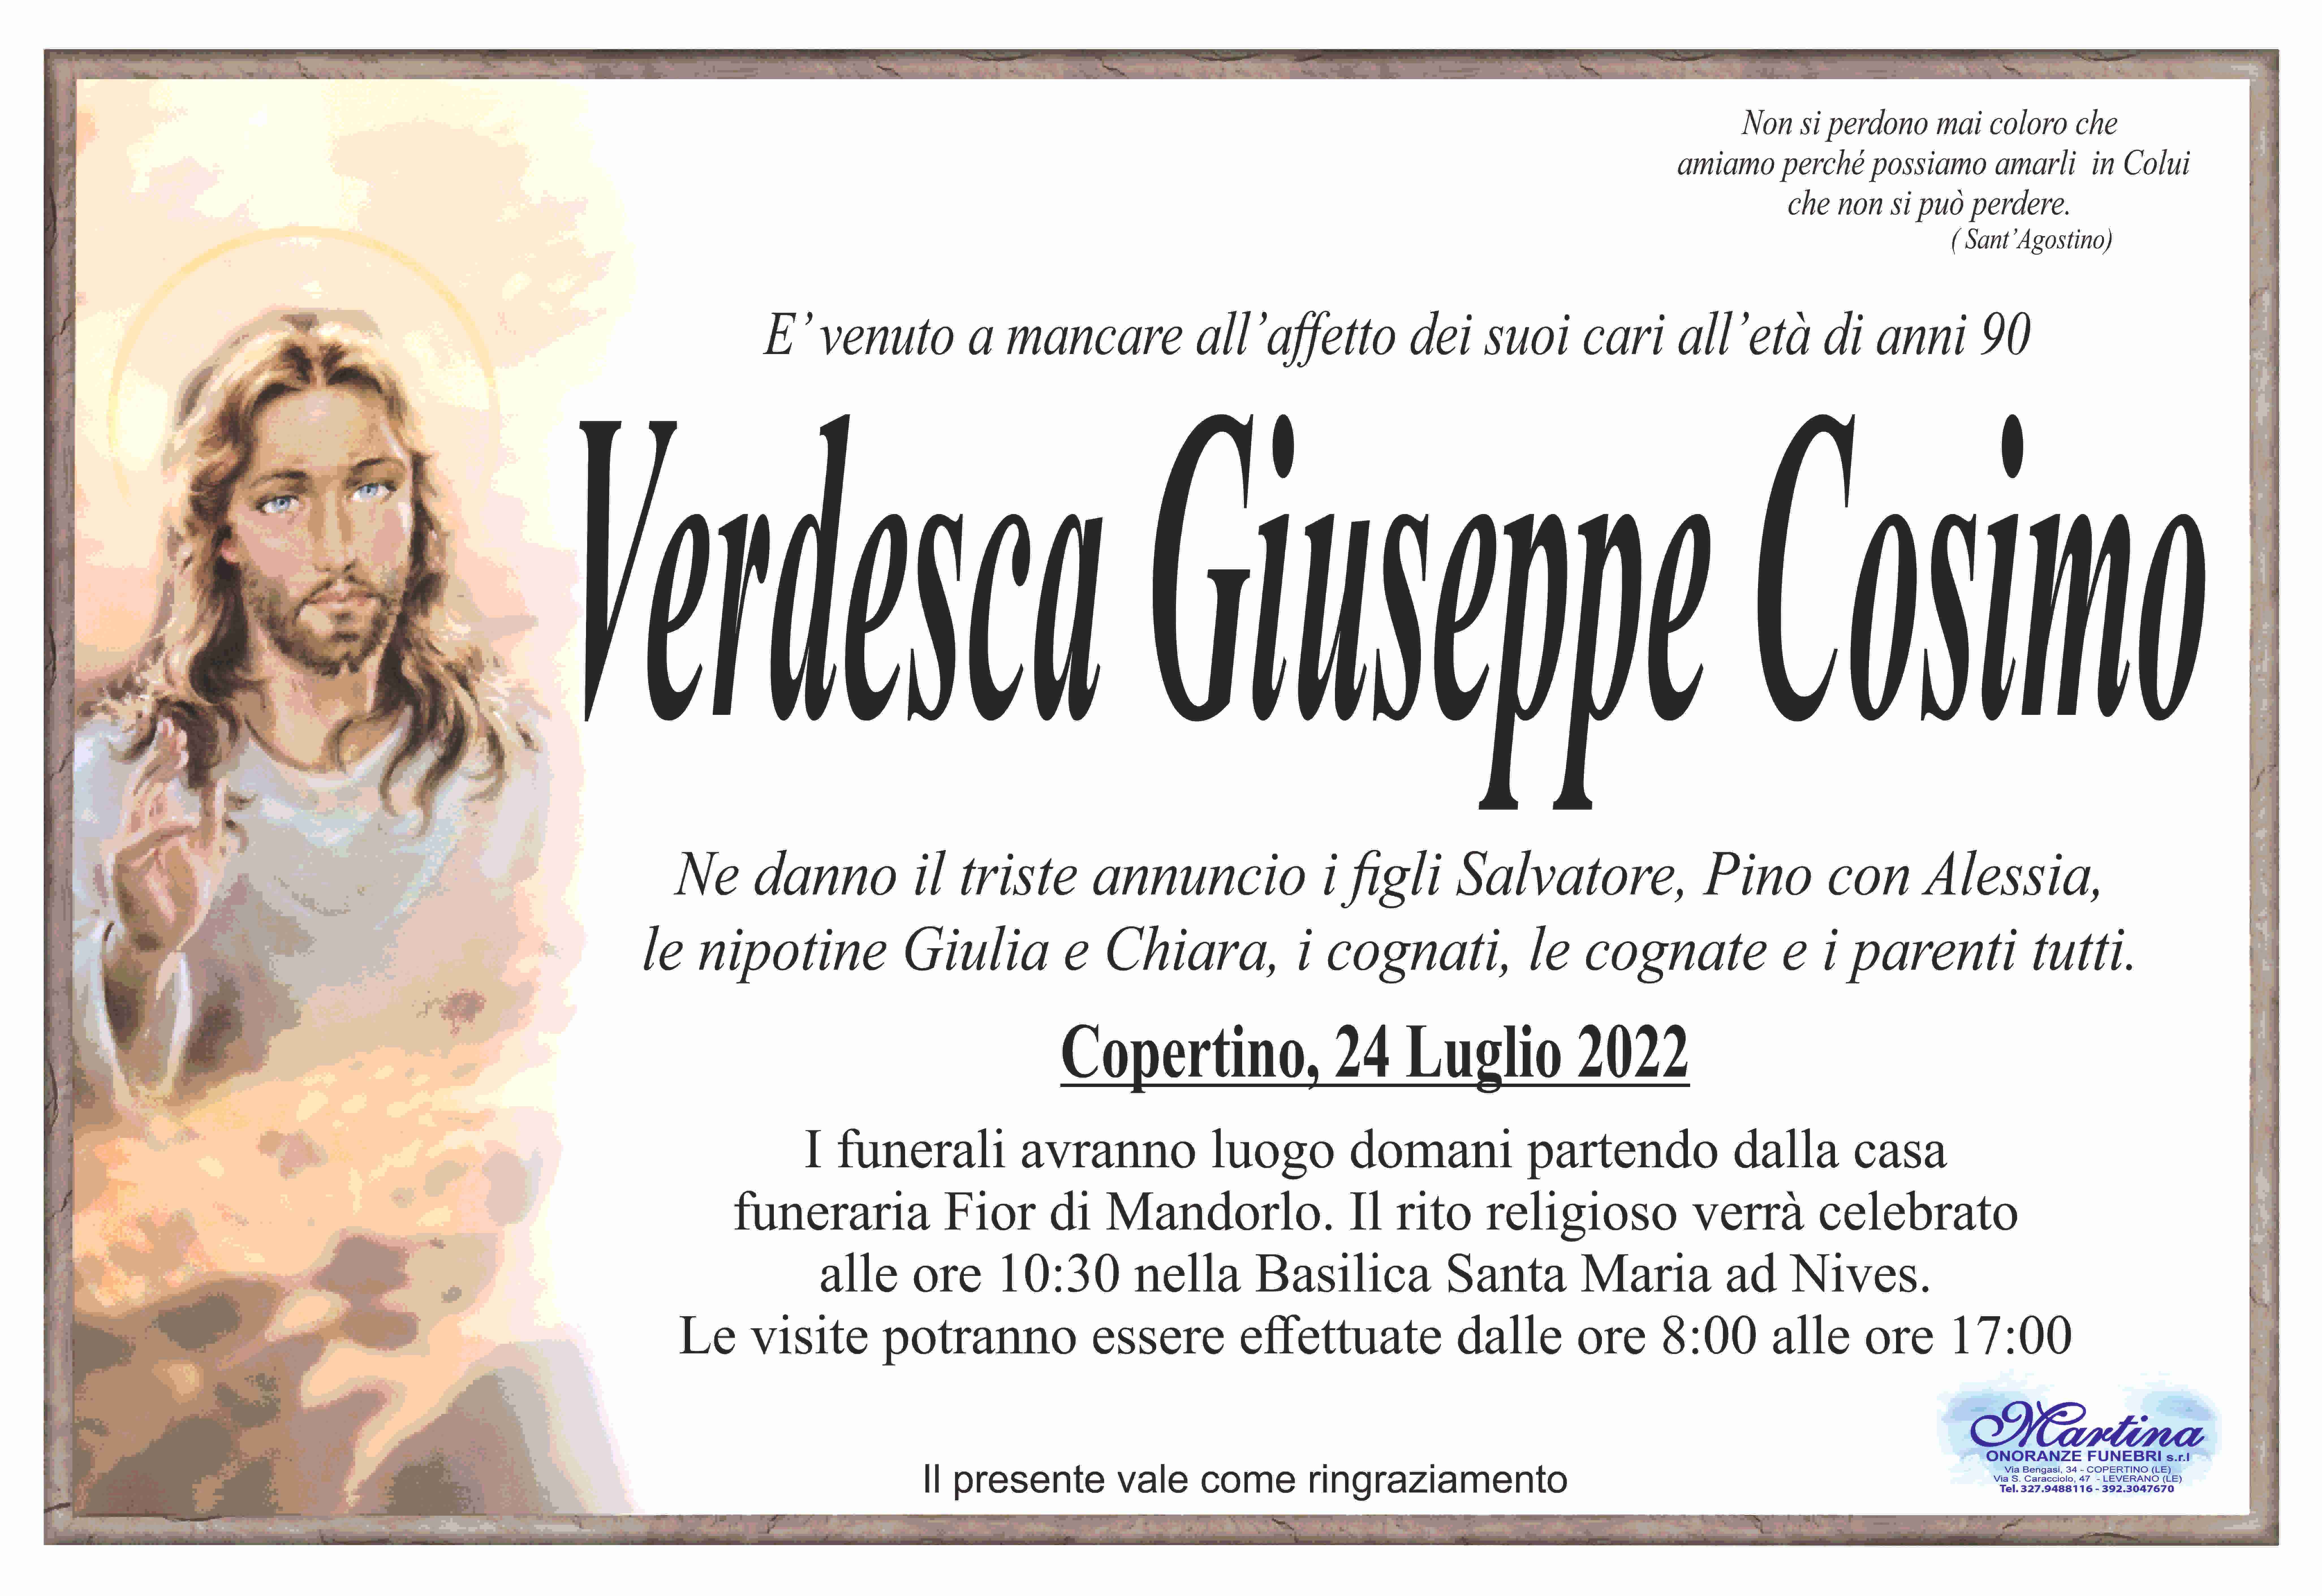 Giuseppe Cosimo Verdesca